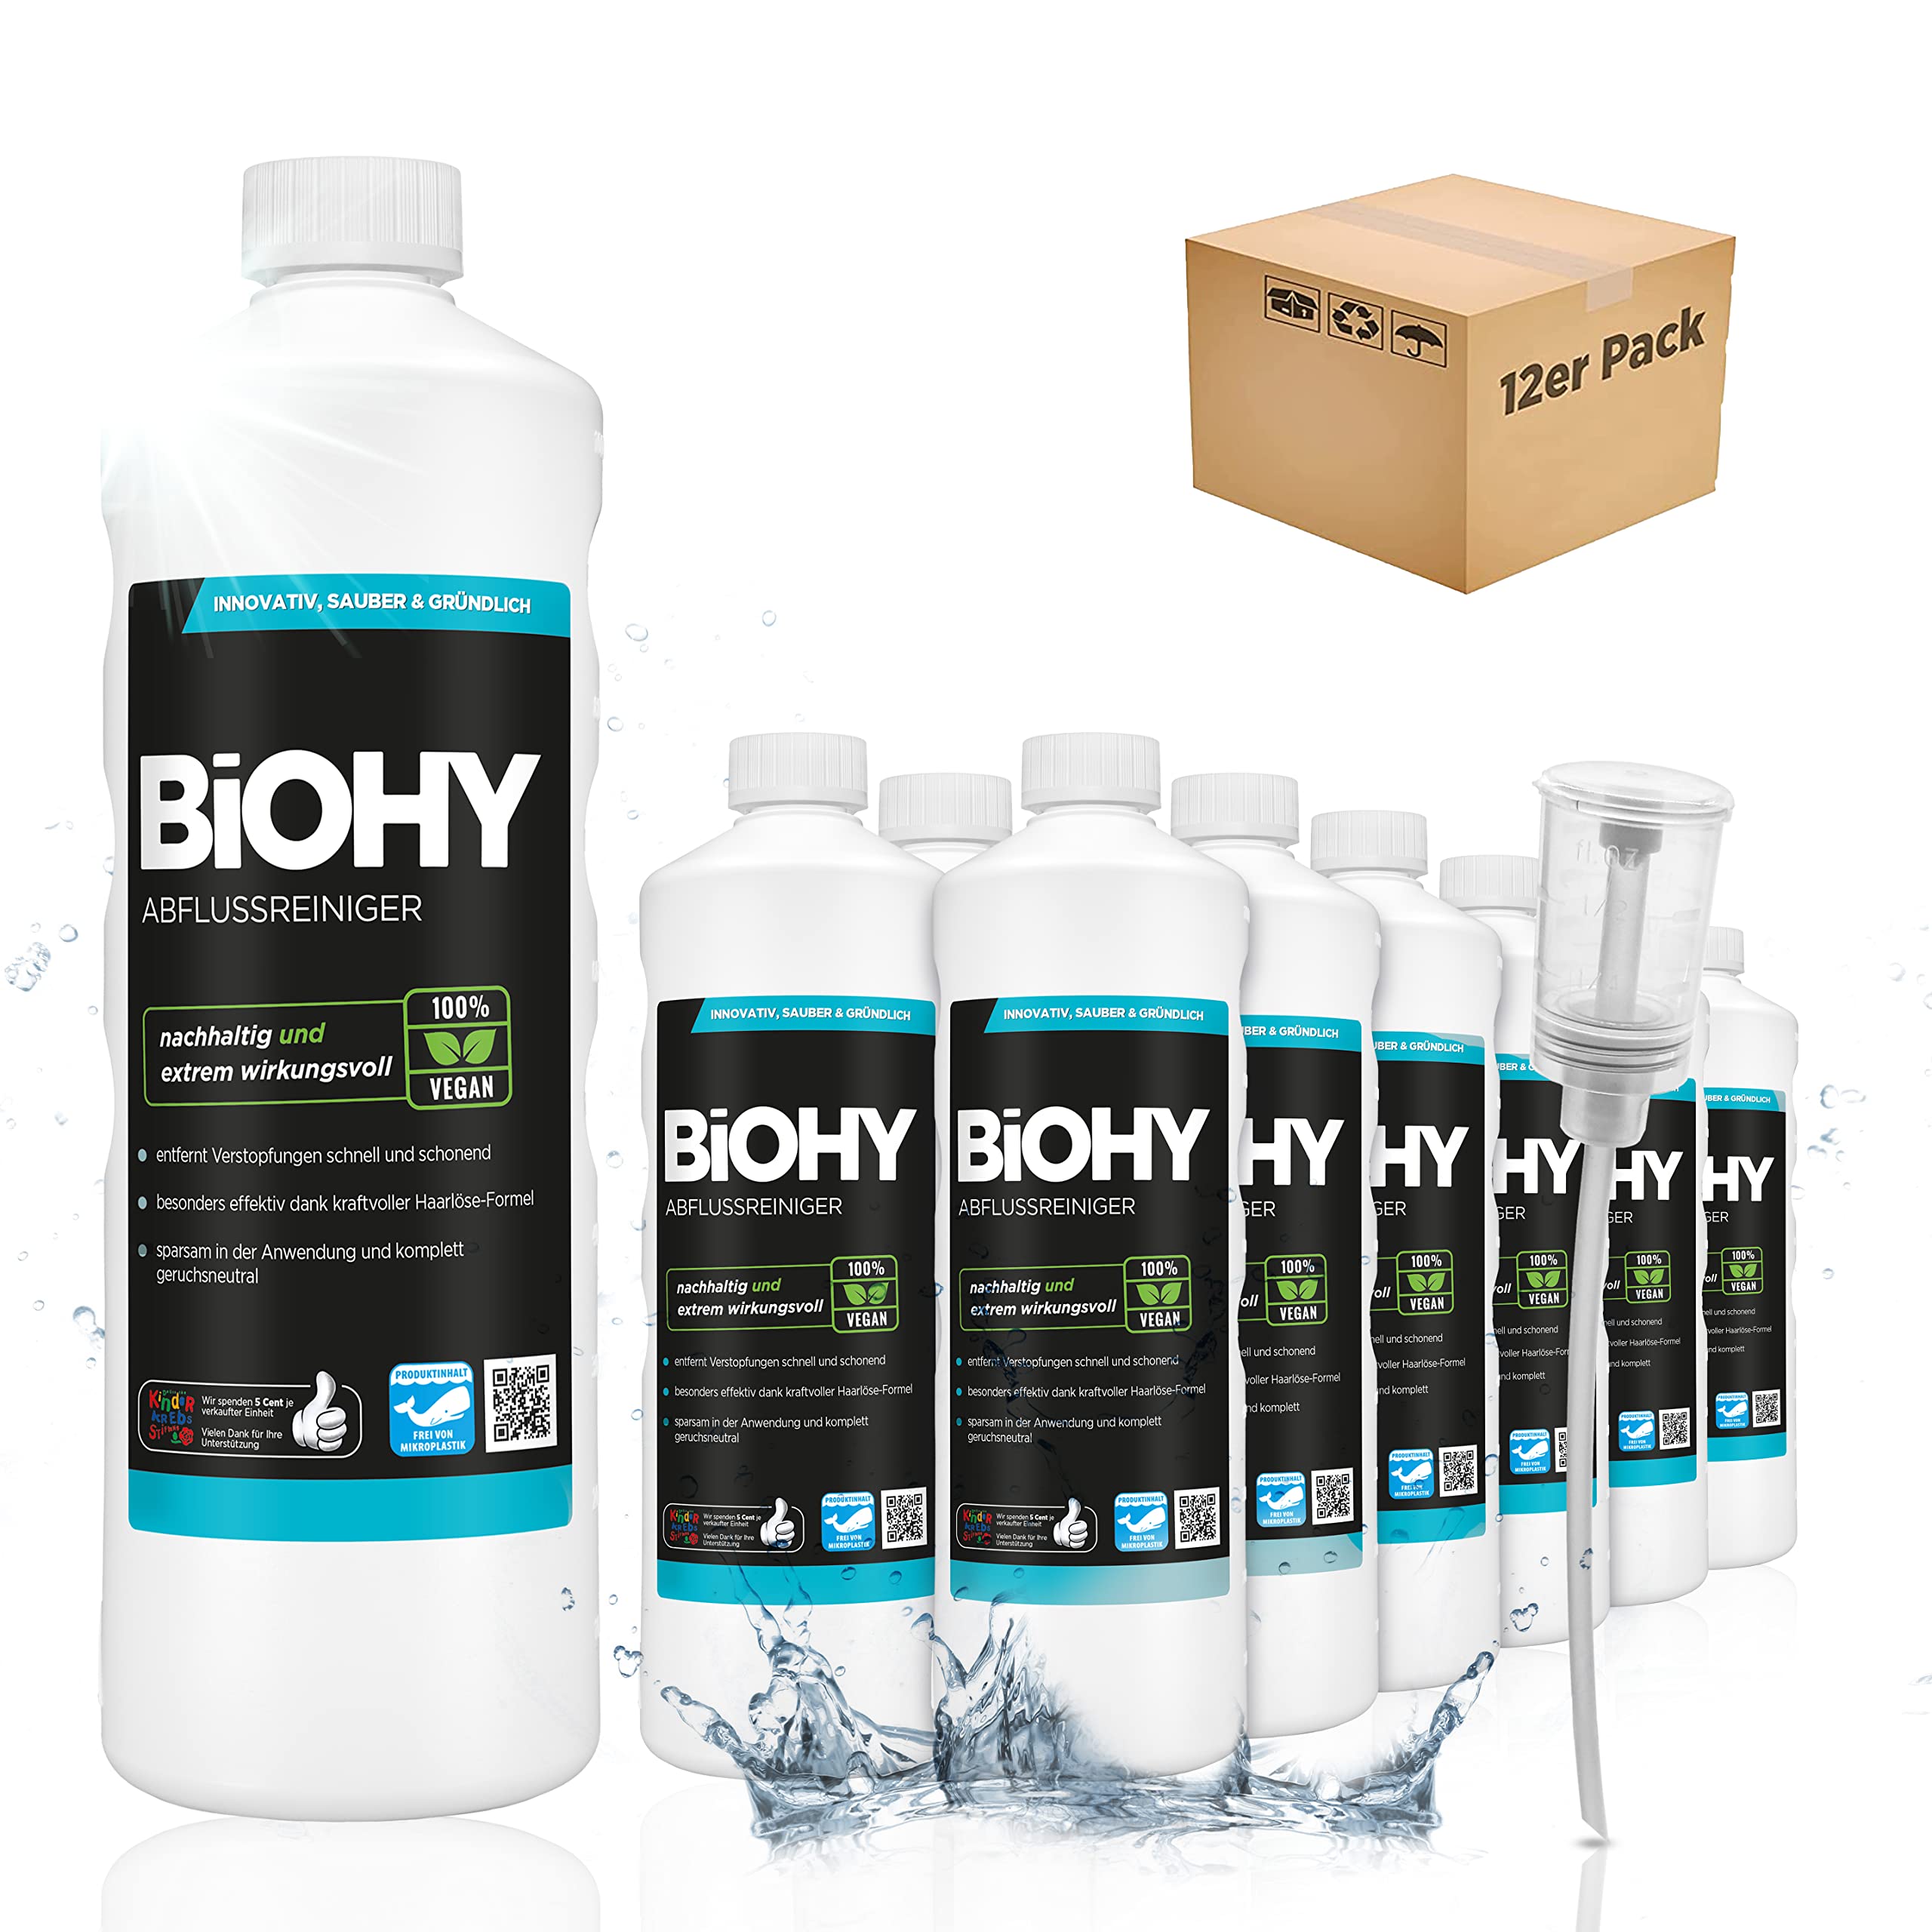 BiOHY Abflussreiniger (12 x 1 Liter) + Dosierer | mit spezieller Haarweg-Formel | Bio Konzentrat für Küche & Bad | entfernt selbst hartnäckigste Verstopfungen | ohne ätzende Dämpfe & Gerüche